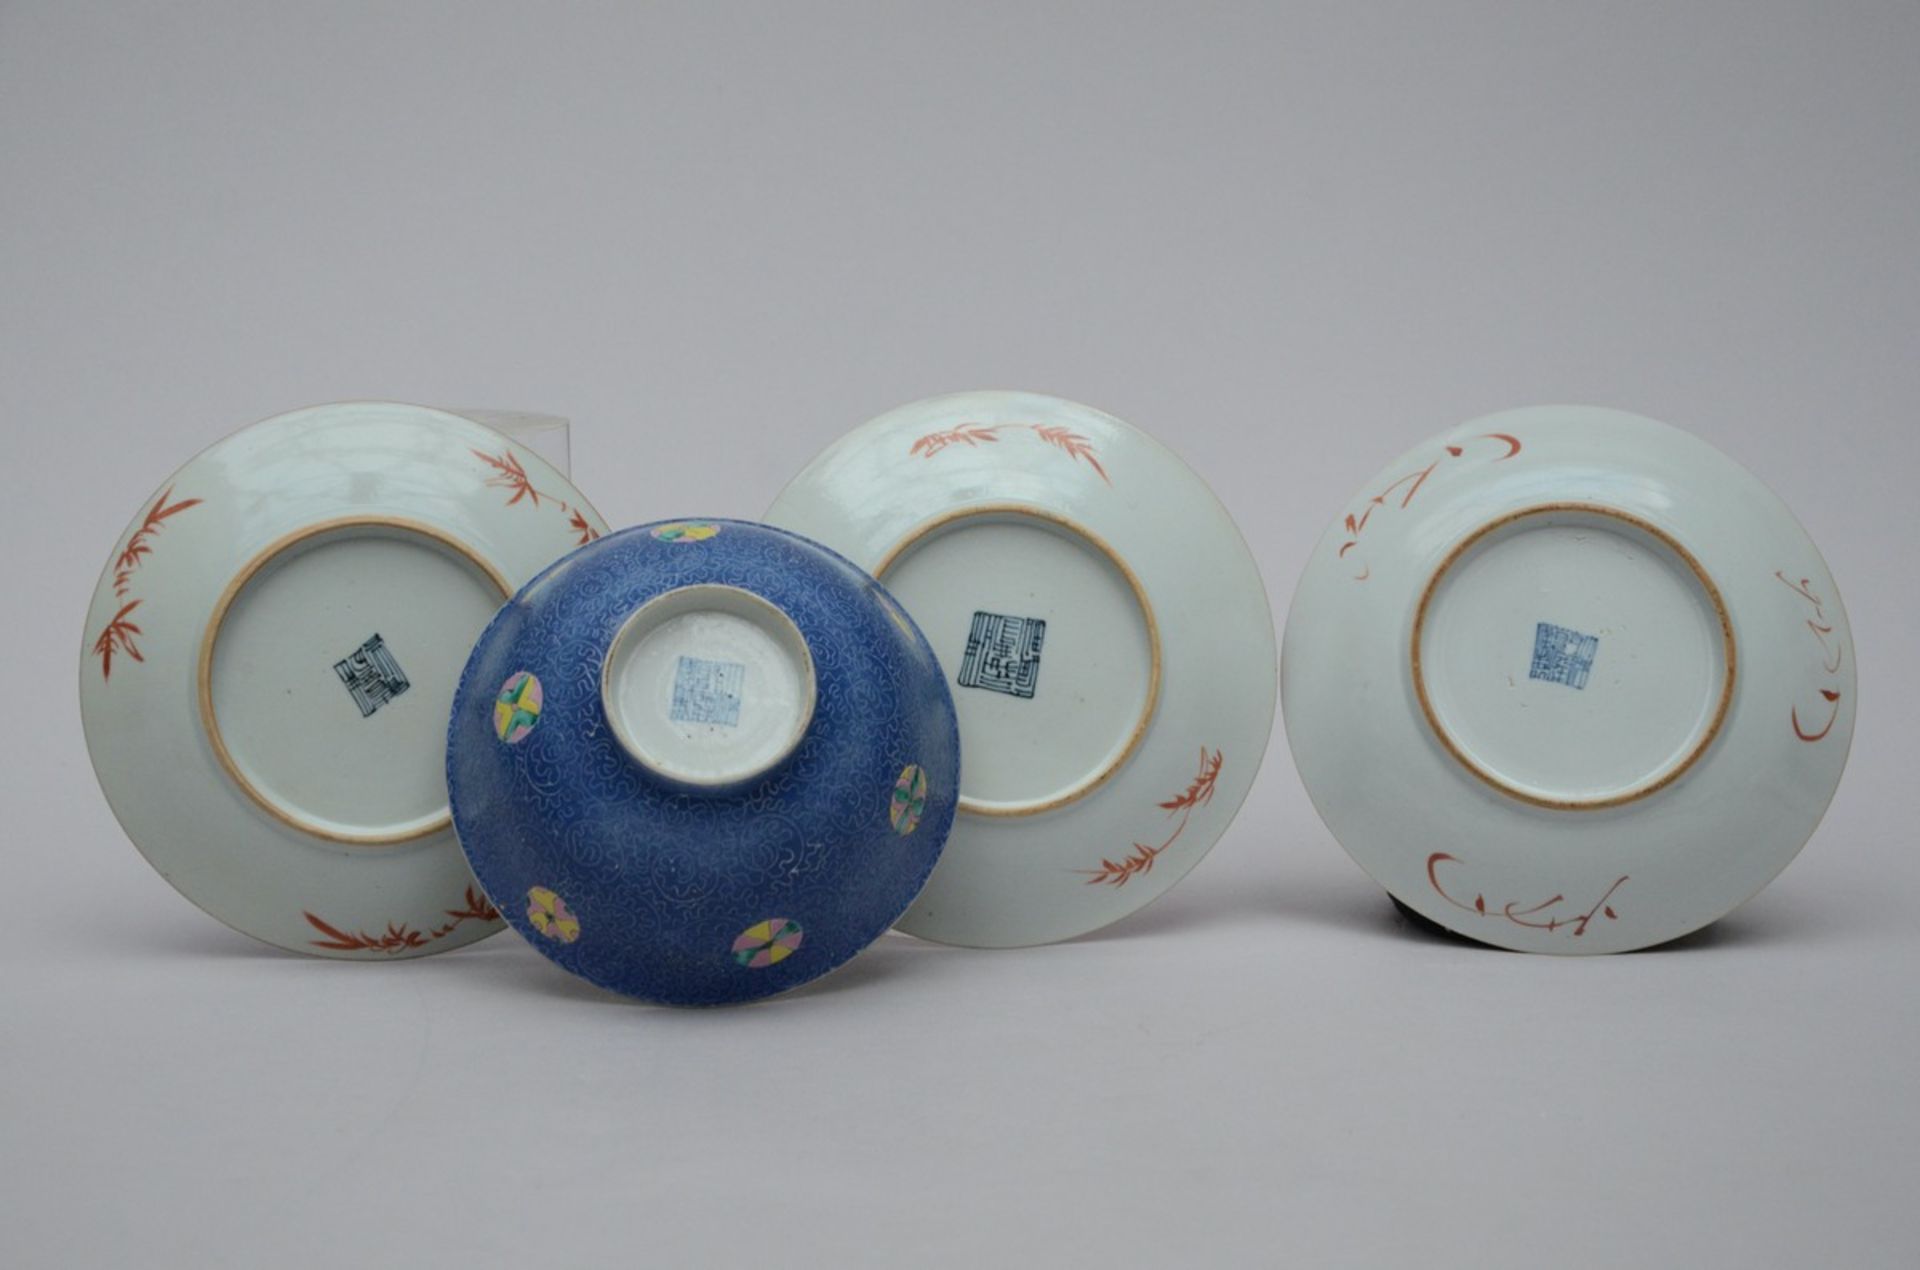 A collection of Republic porcelain with graviata decoration: 4 bowls (dia 17.5 - 20 cm) - Bild 2 aus 4